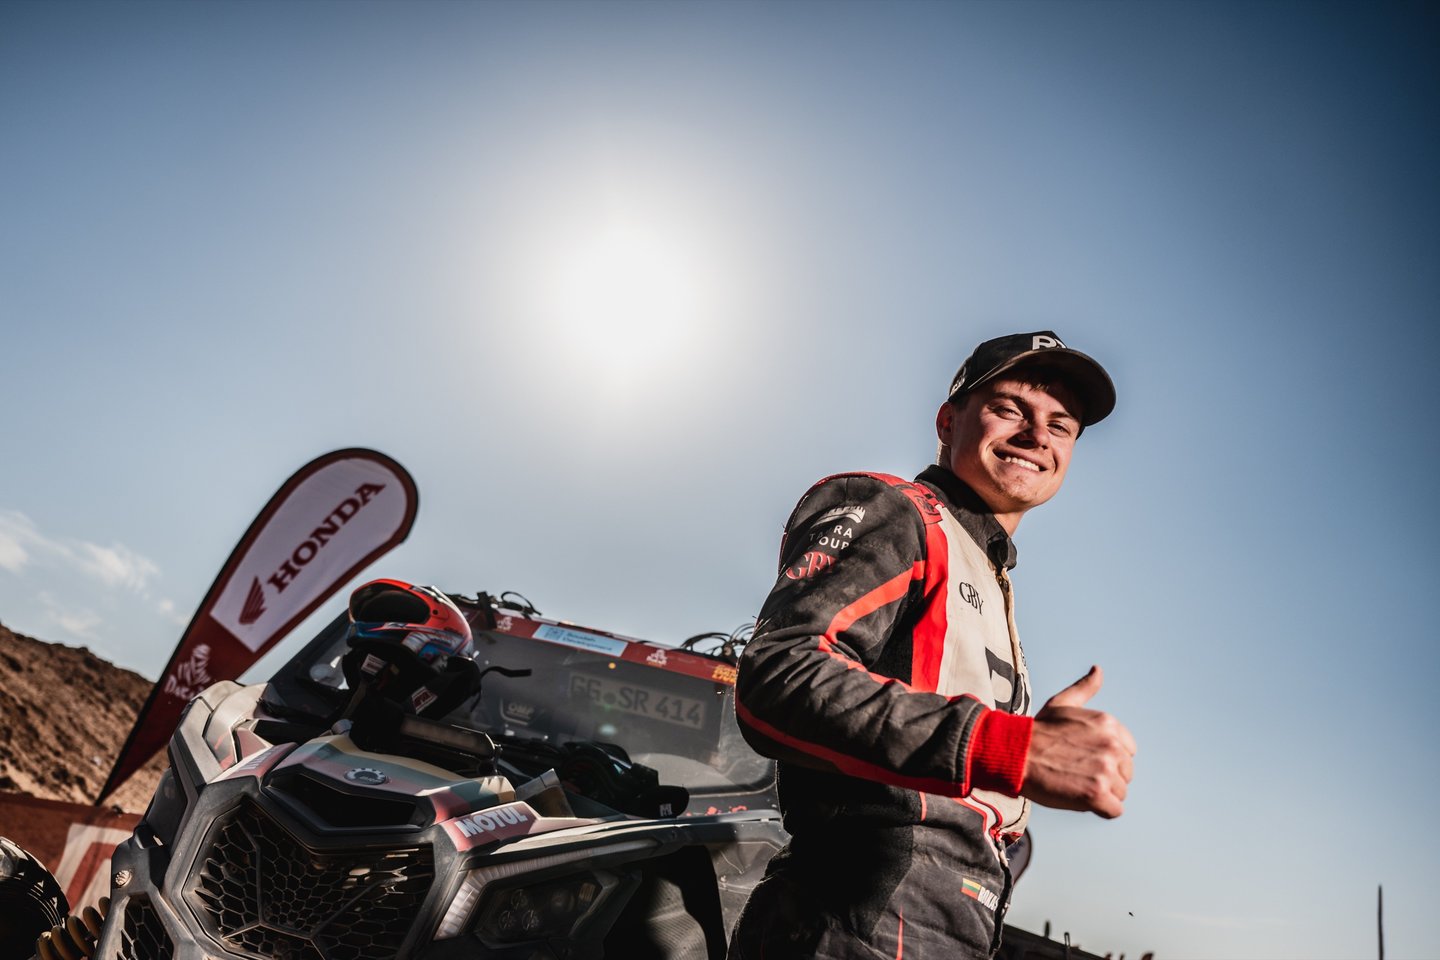 Jauniausias Dakaro lenktynėse dalyvaujantis lietuvis laimėjo pirmąjį savo Dakaro greičio ruožą ir atnešė pirmą pergalę lietuviams šiais metais.<br>Pranešėjų spaudai nuotr.